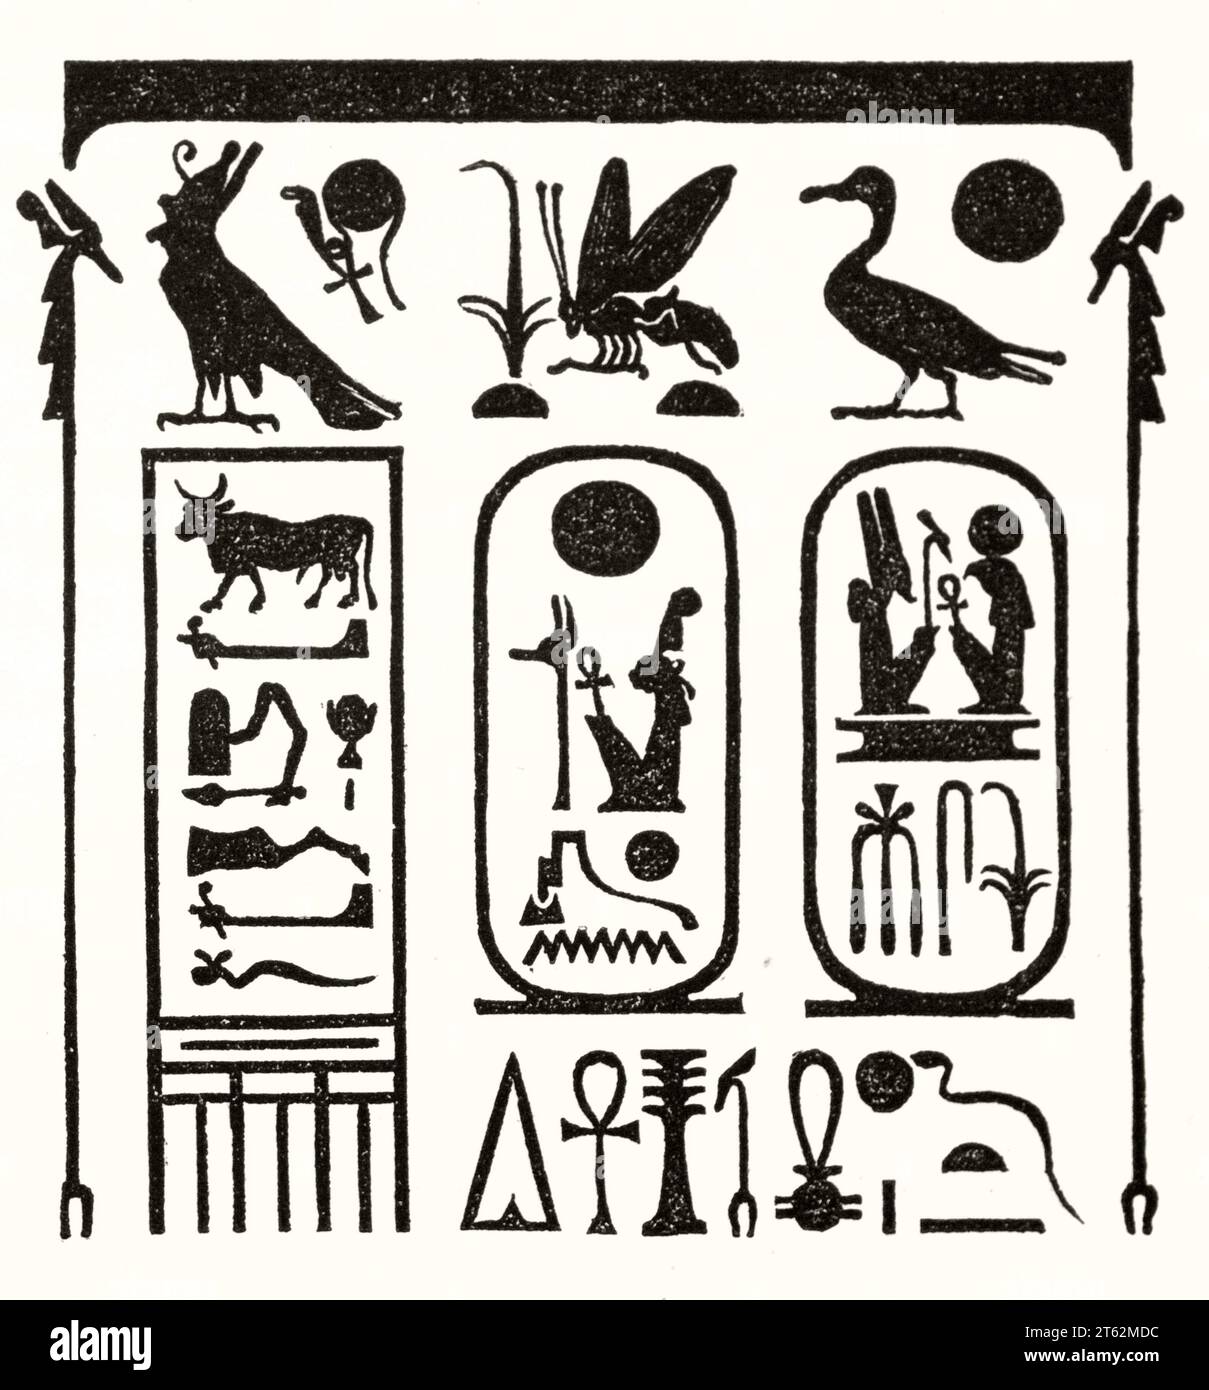 Détail de Abydos King List, trouvé dans le temple de Seti, Egypte. Par auteur non identifié, publ. Sur magasin pittoresque, Paris, 1849 Banque D'Images